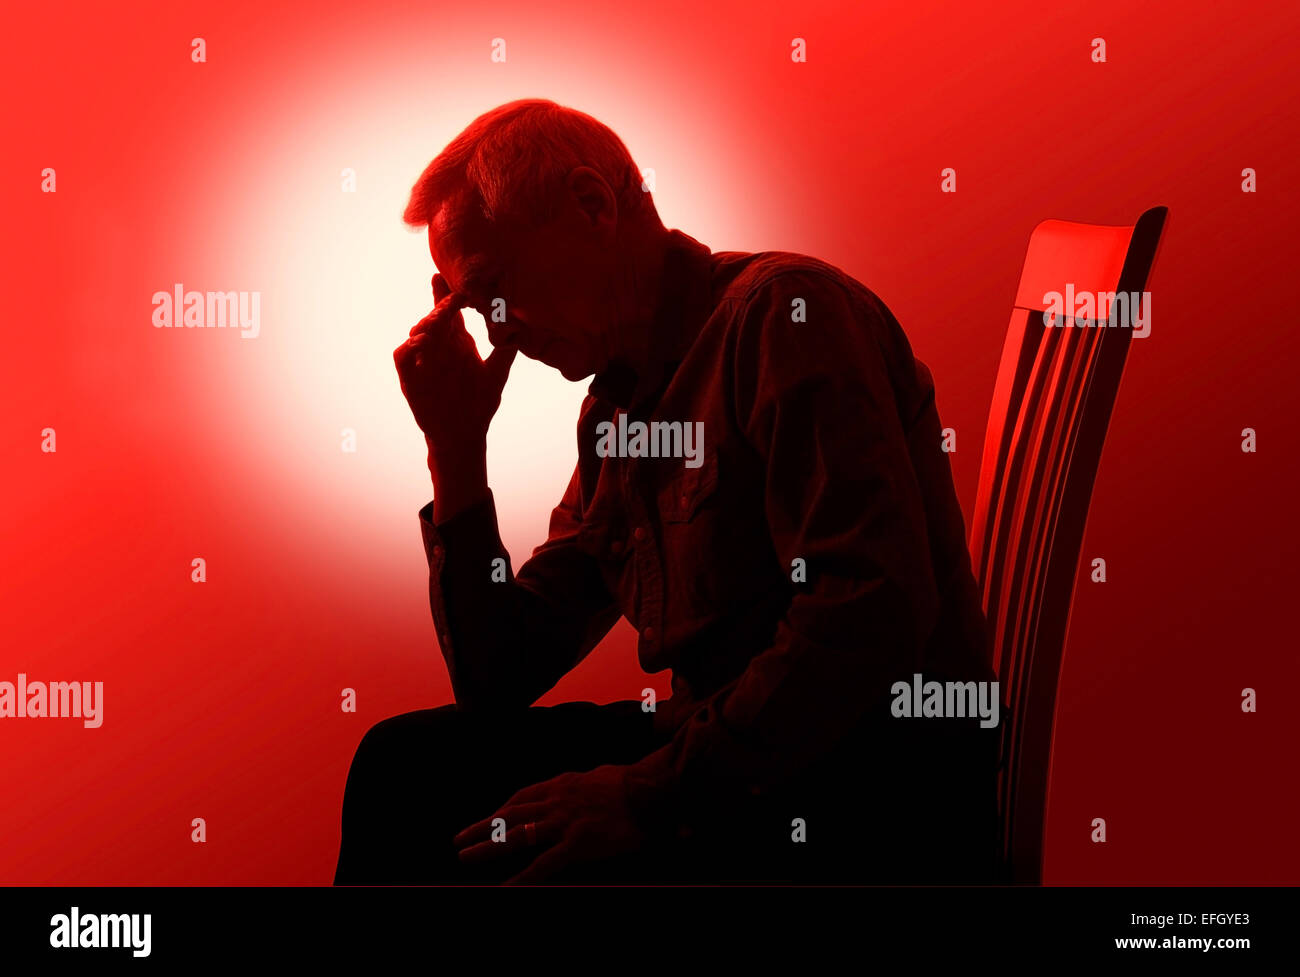 Spot sfondo illuminato dando un effetto di silhouette di un uomo di circa 60 anni che è seduto su una sedia guardando preoccupato, malati o stanchi. Foto Stock